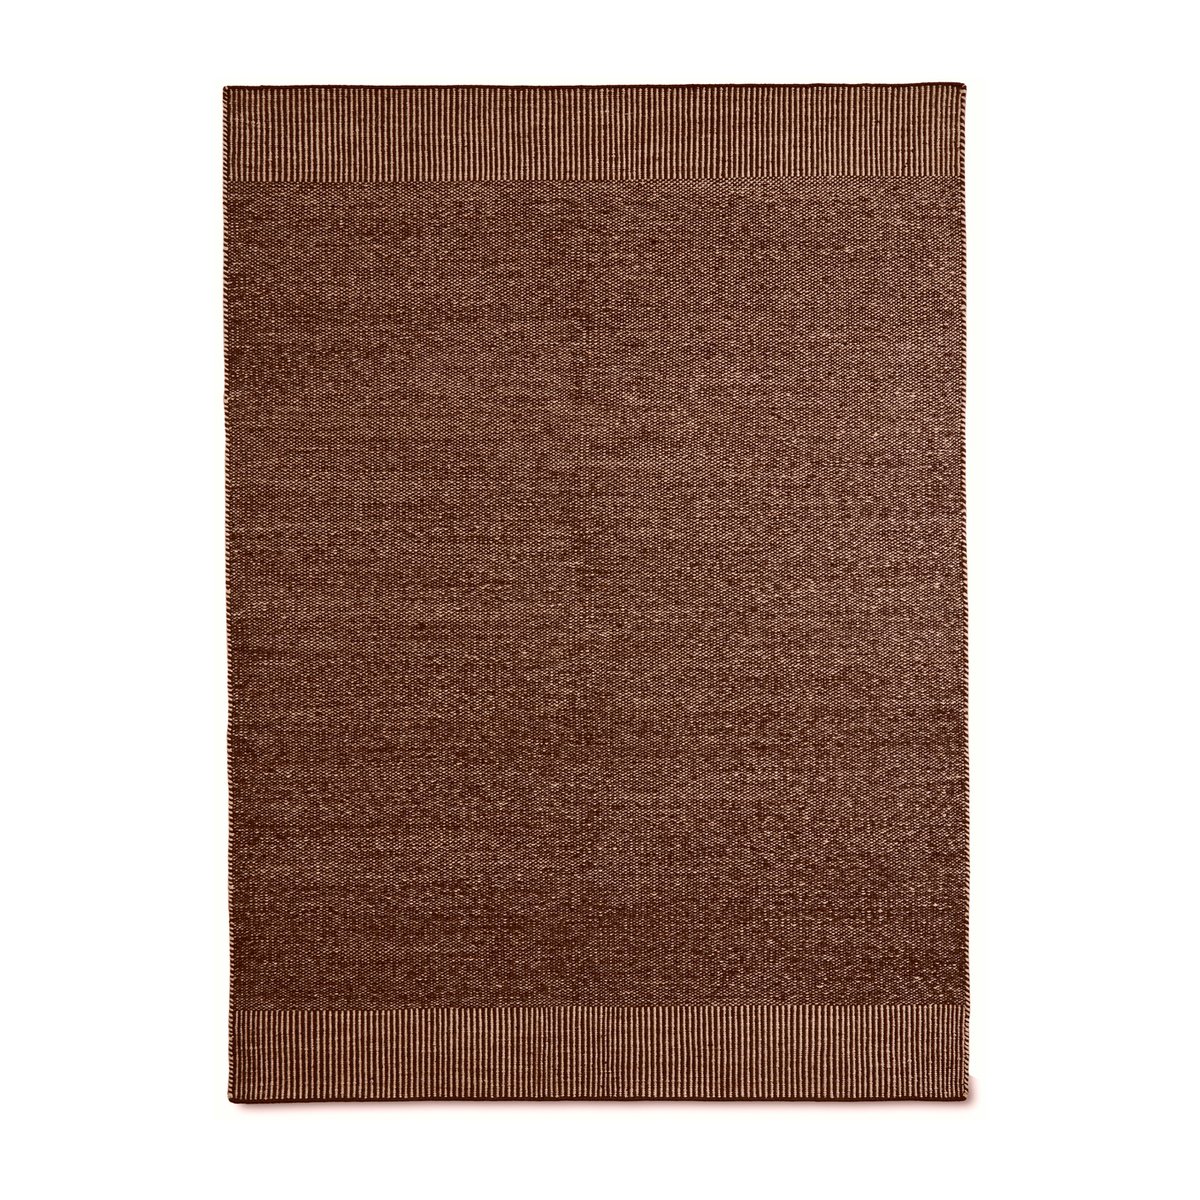 Woud Rombo matto ruosteenruskea 170×240 cm